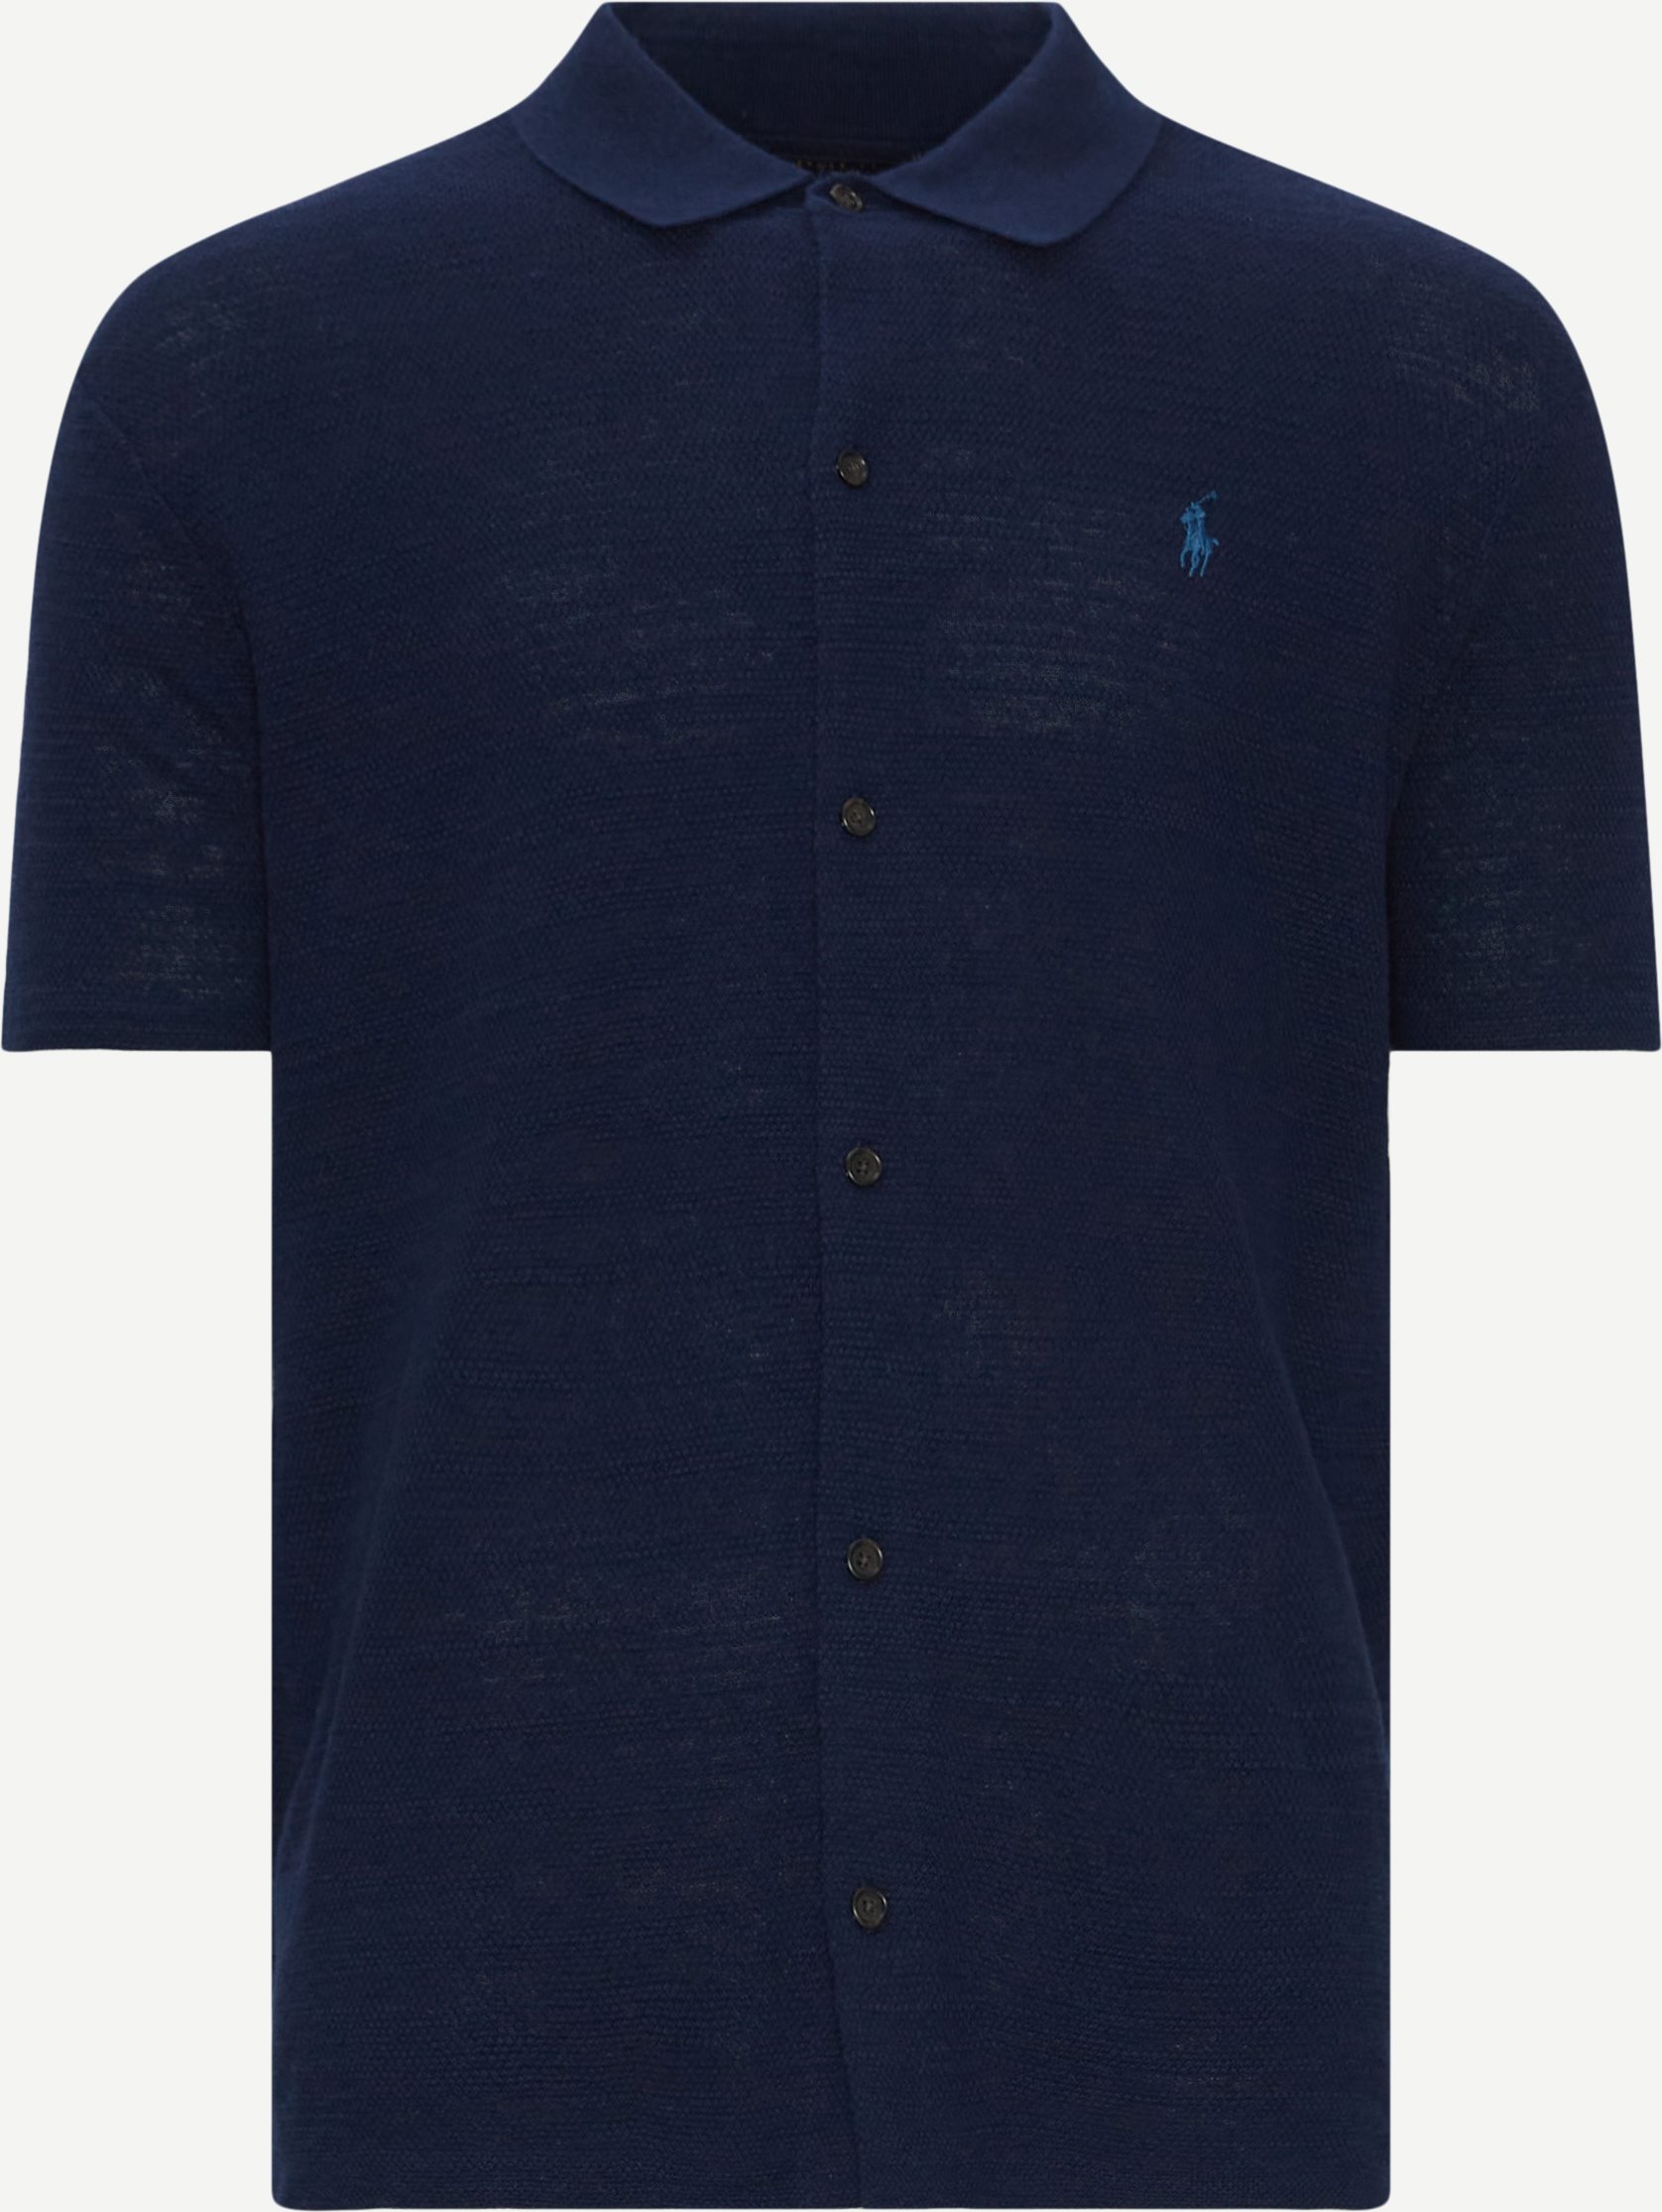 Polo Ralph Lauren Kortärmade skjortor 710941096 SS SHIRT Blå